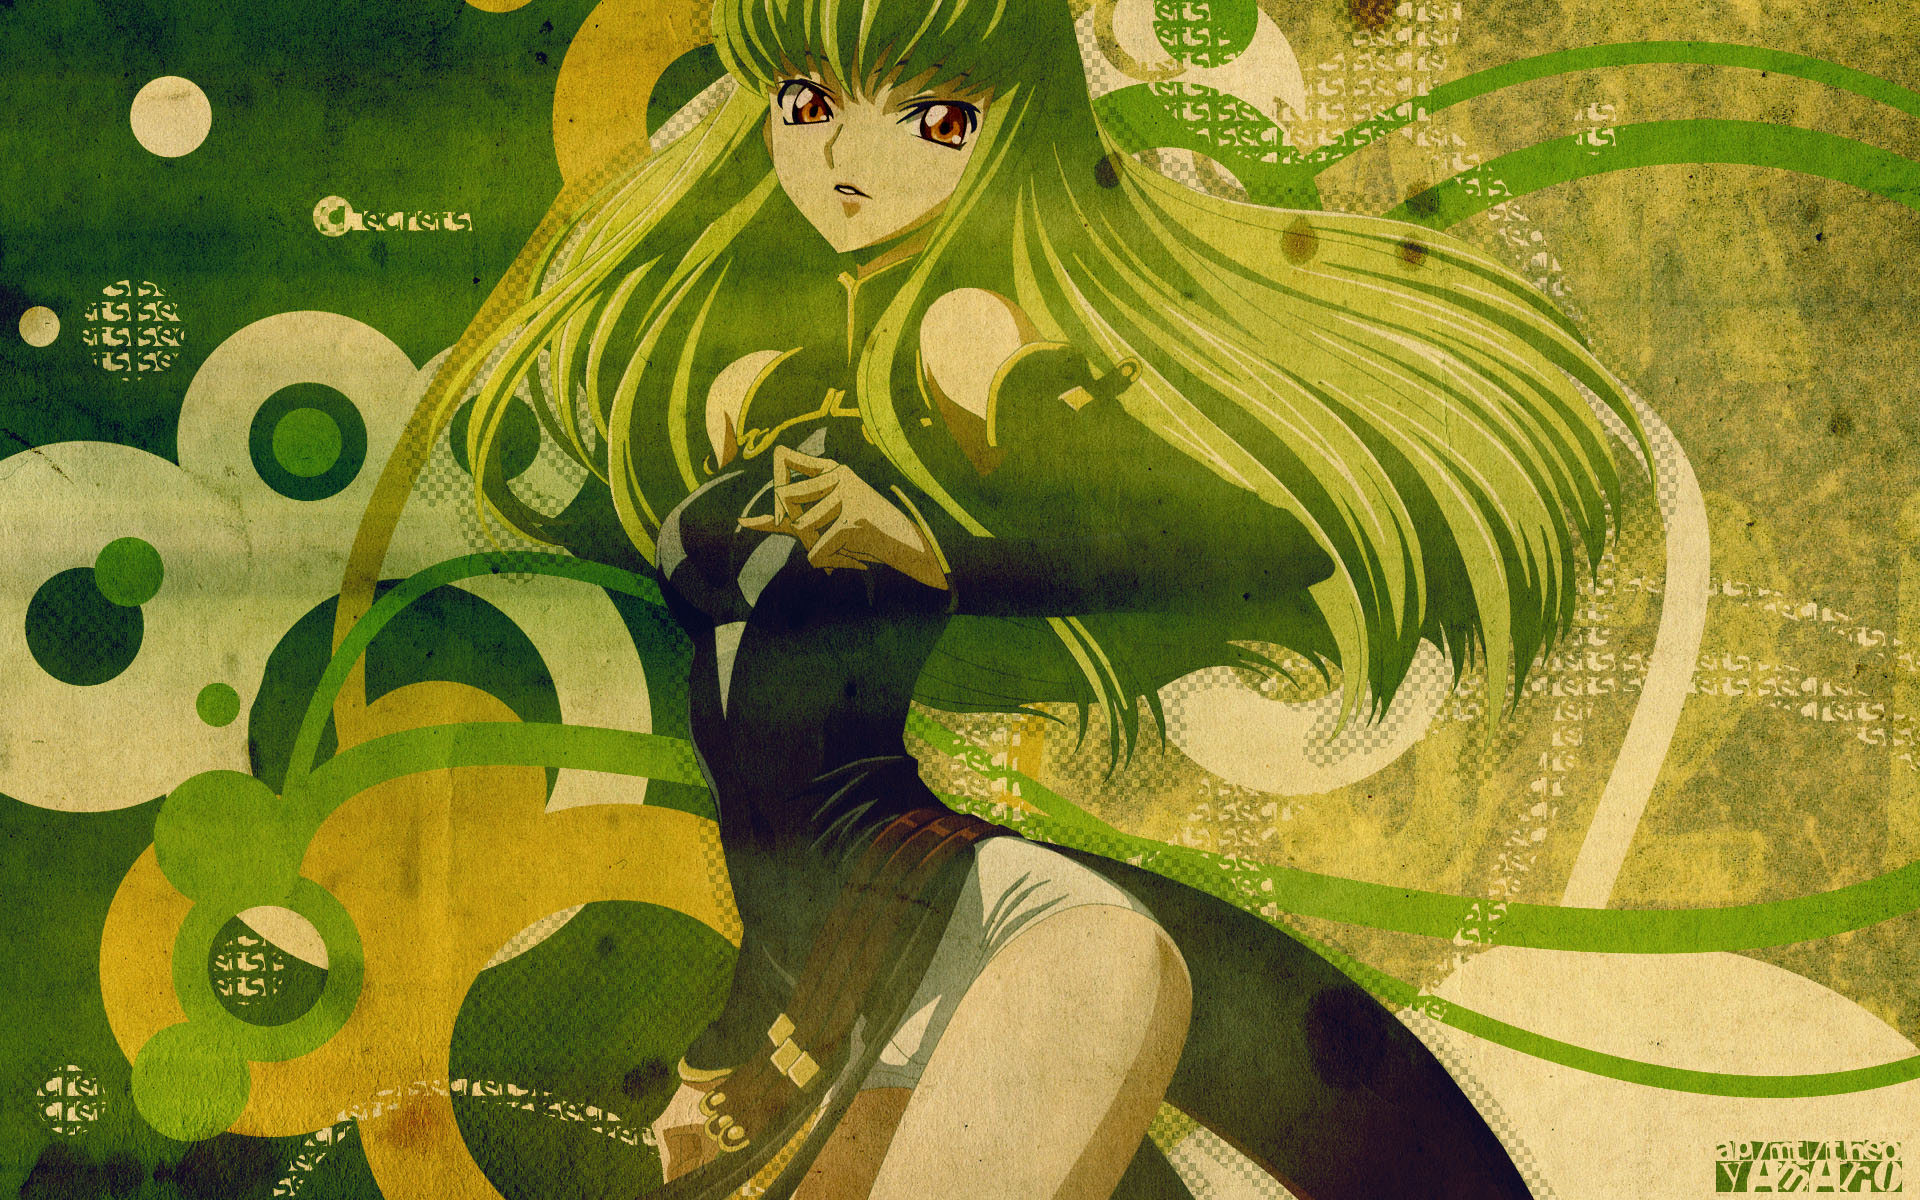 HD wallpaper: code geass cc anime 1920x1080 Anime Code Geass HD Art, C.C.